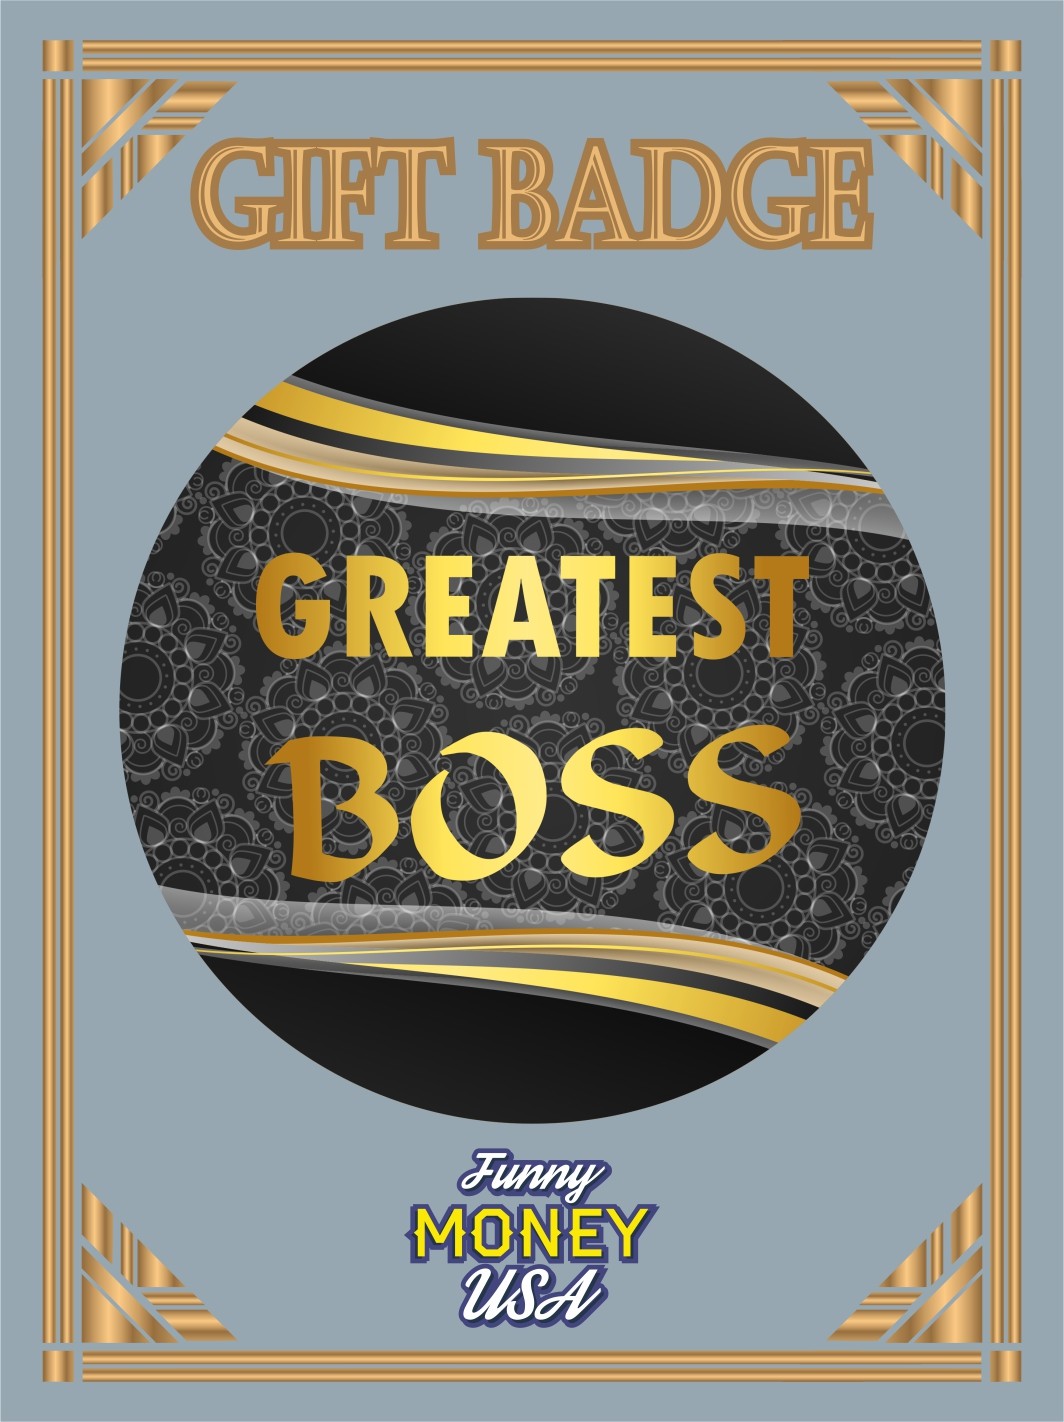 Gift badges "Greatest Boss"